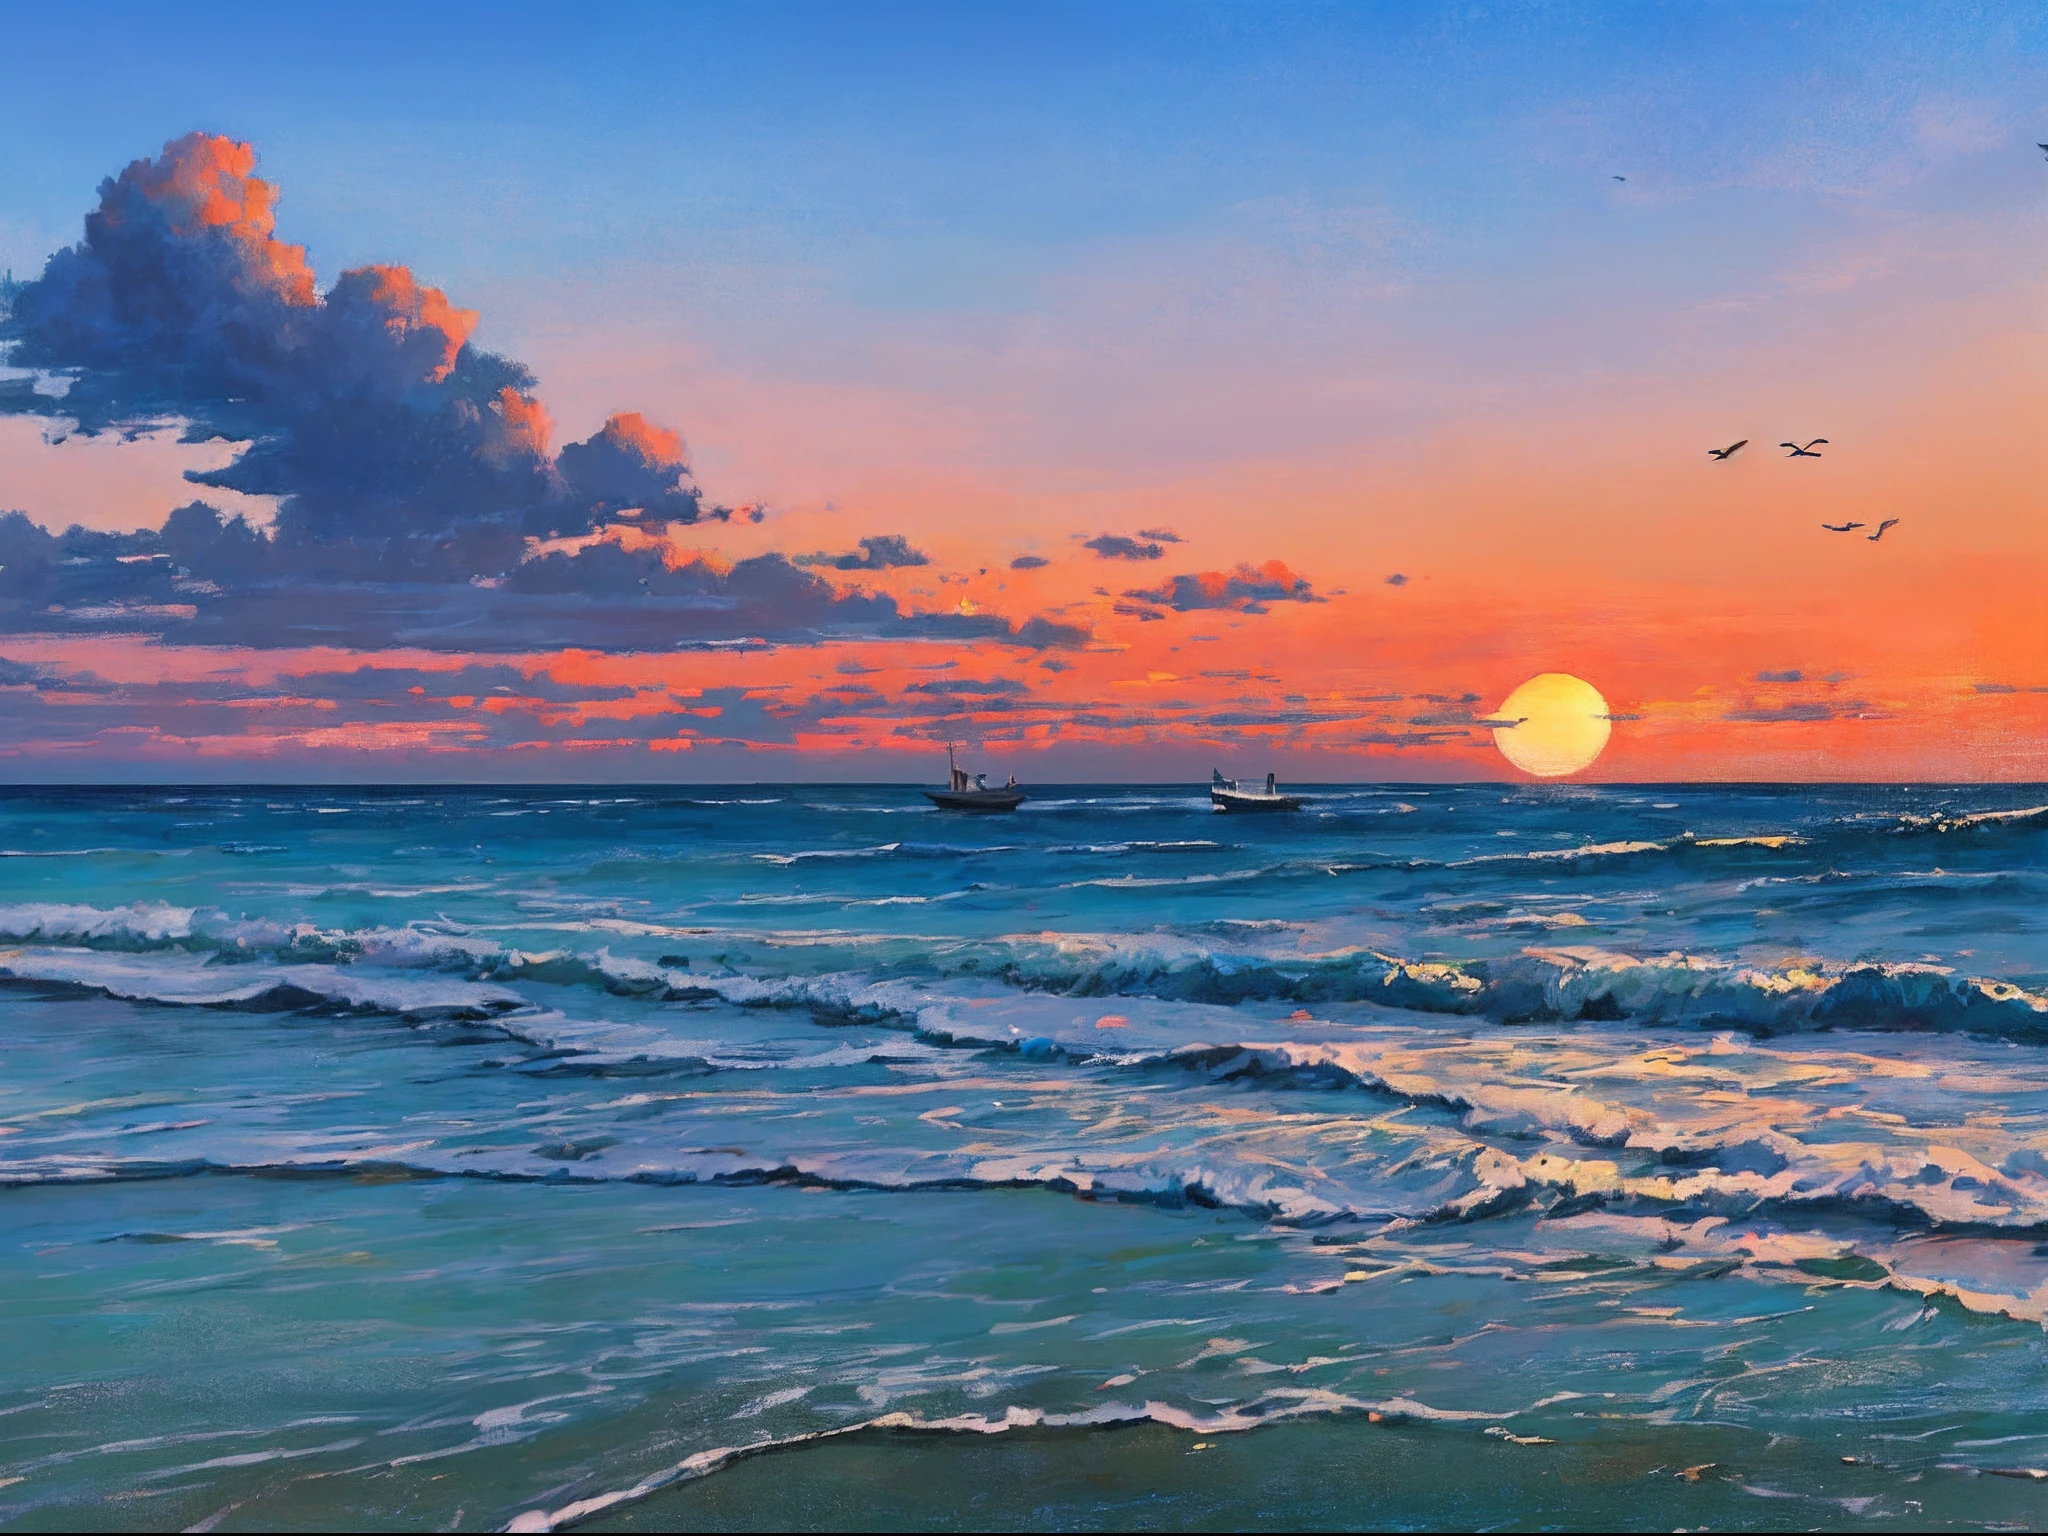 "Superbe peinture à l&#39;huile représentant un paysage de plage avec un lever de soleil tranquille, vagues douces, un bateau lointain, une tour d&#39;observation pittoresque, des nuages, et des silhouettes gracieuses d&#39;oiseaux planant dans le ciel."